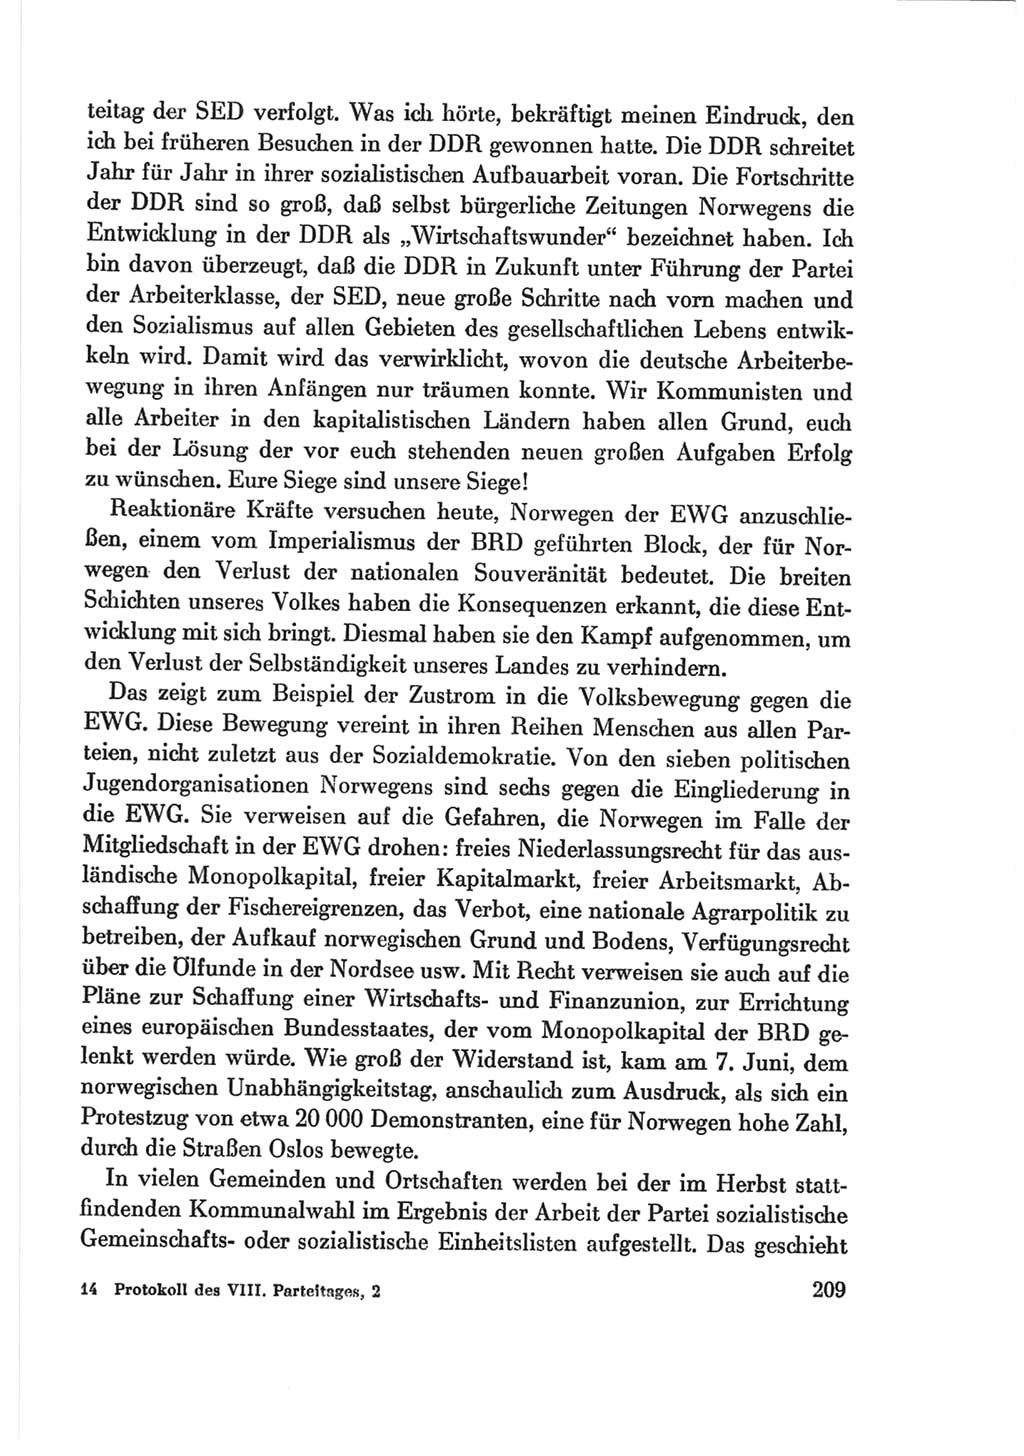 Protokoll der Verhandlungen des Ⅷ. Parteitages der Sozialistischen Einheitspartei Deutschlands (SED) [Deutsche Demokratische Republik (DDR)] 1971, Band 2, Seite 209 (Prot. Verh. Ⅷ. PT SED DDR 1971, Bd. 2, S. 209)